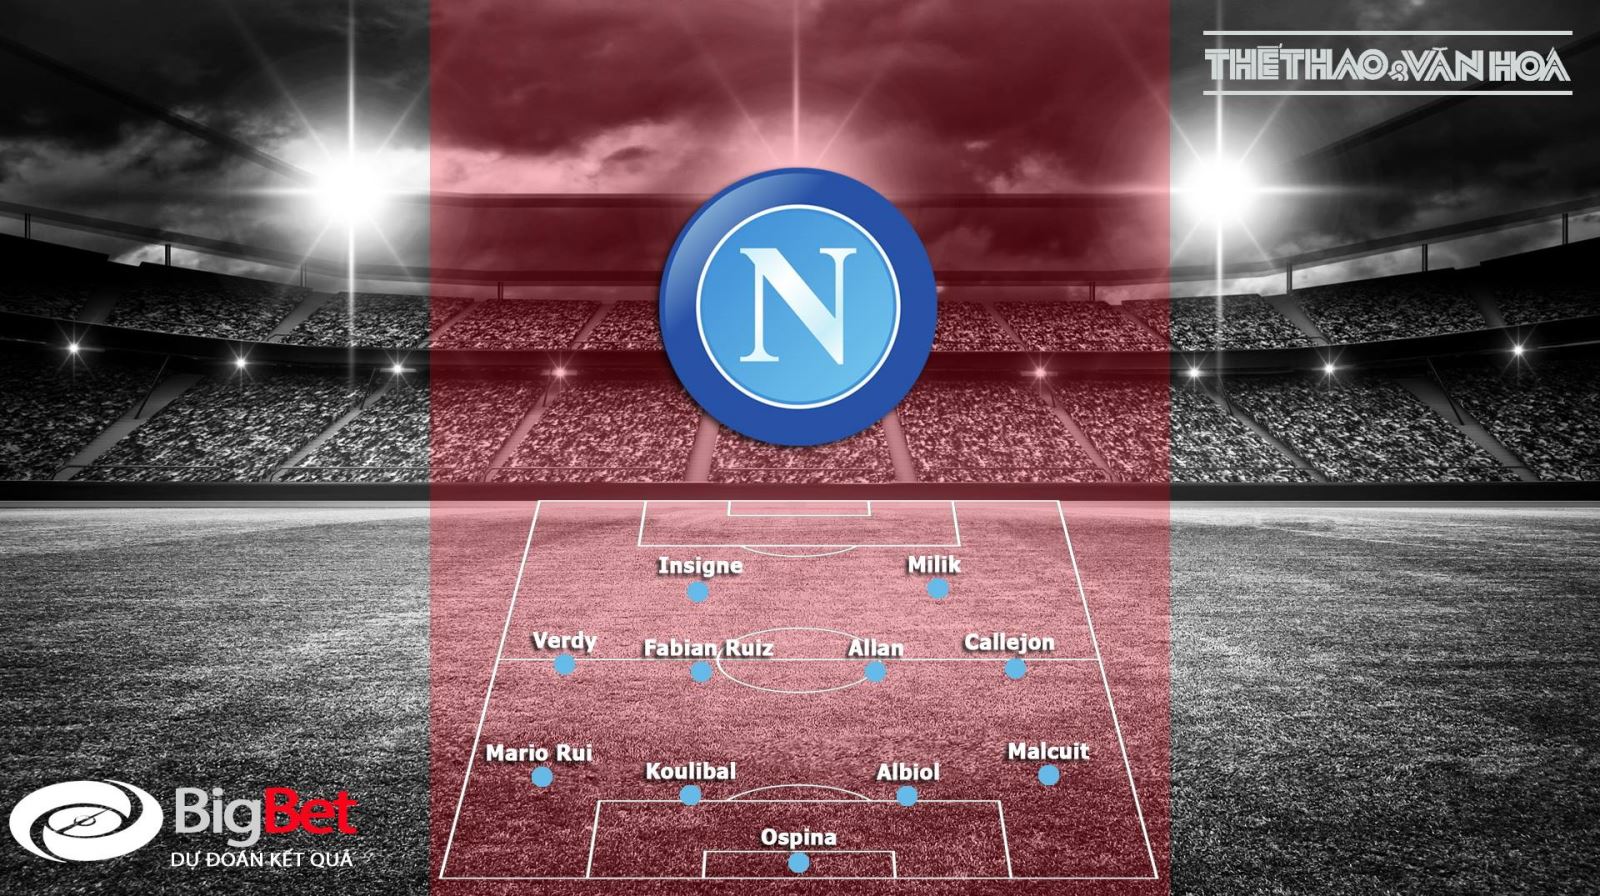 Vòng 7 Serie A: Nhận định bóng đá Juventus vs Napoli (0h00 ngày 30/9)